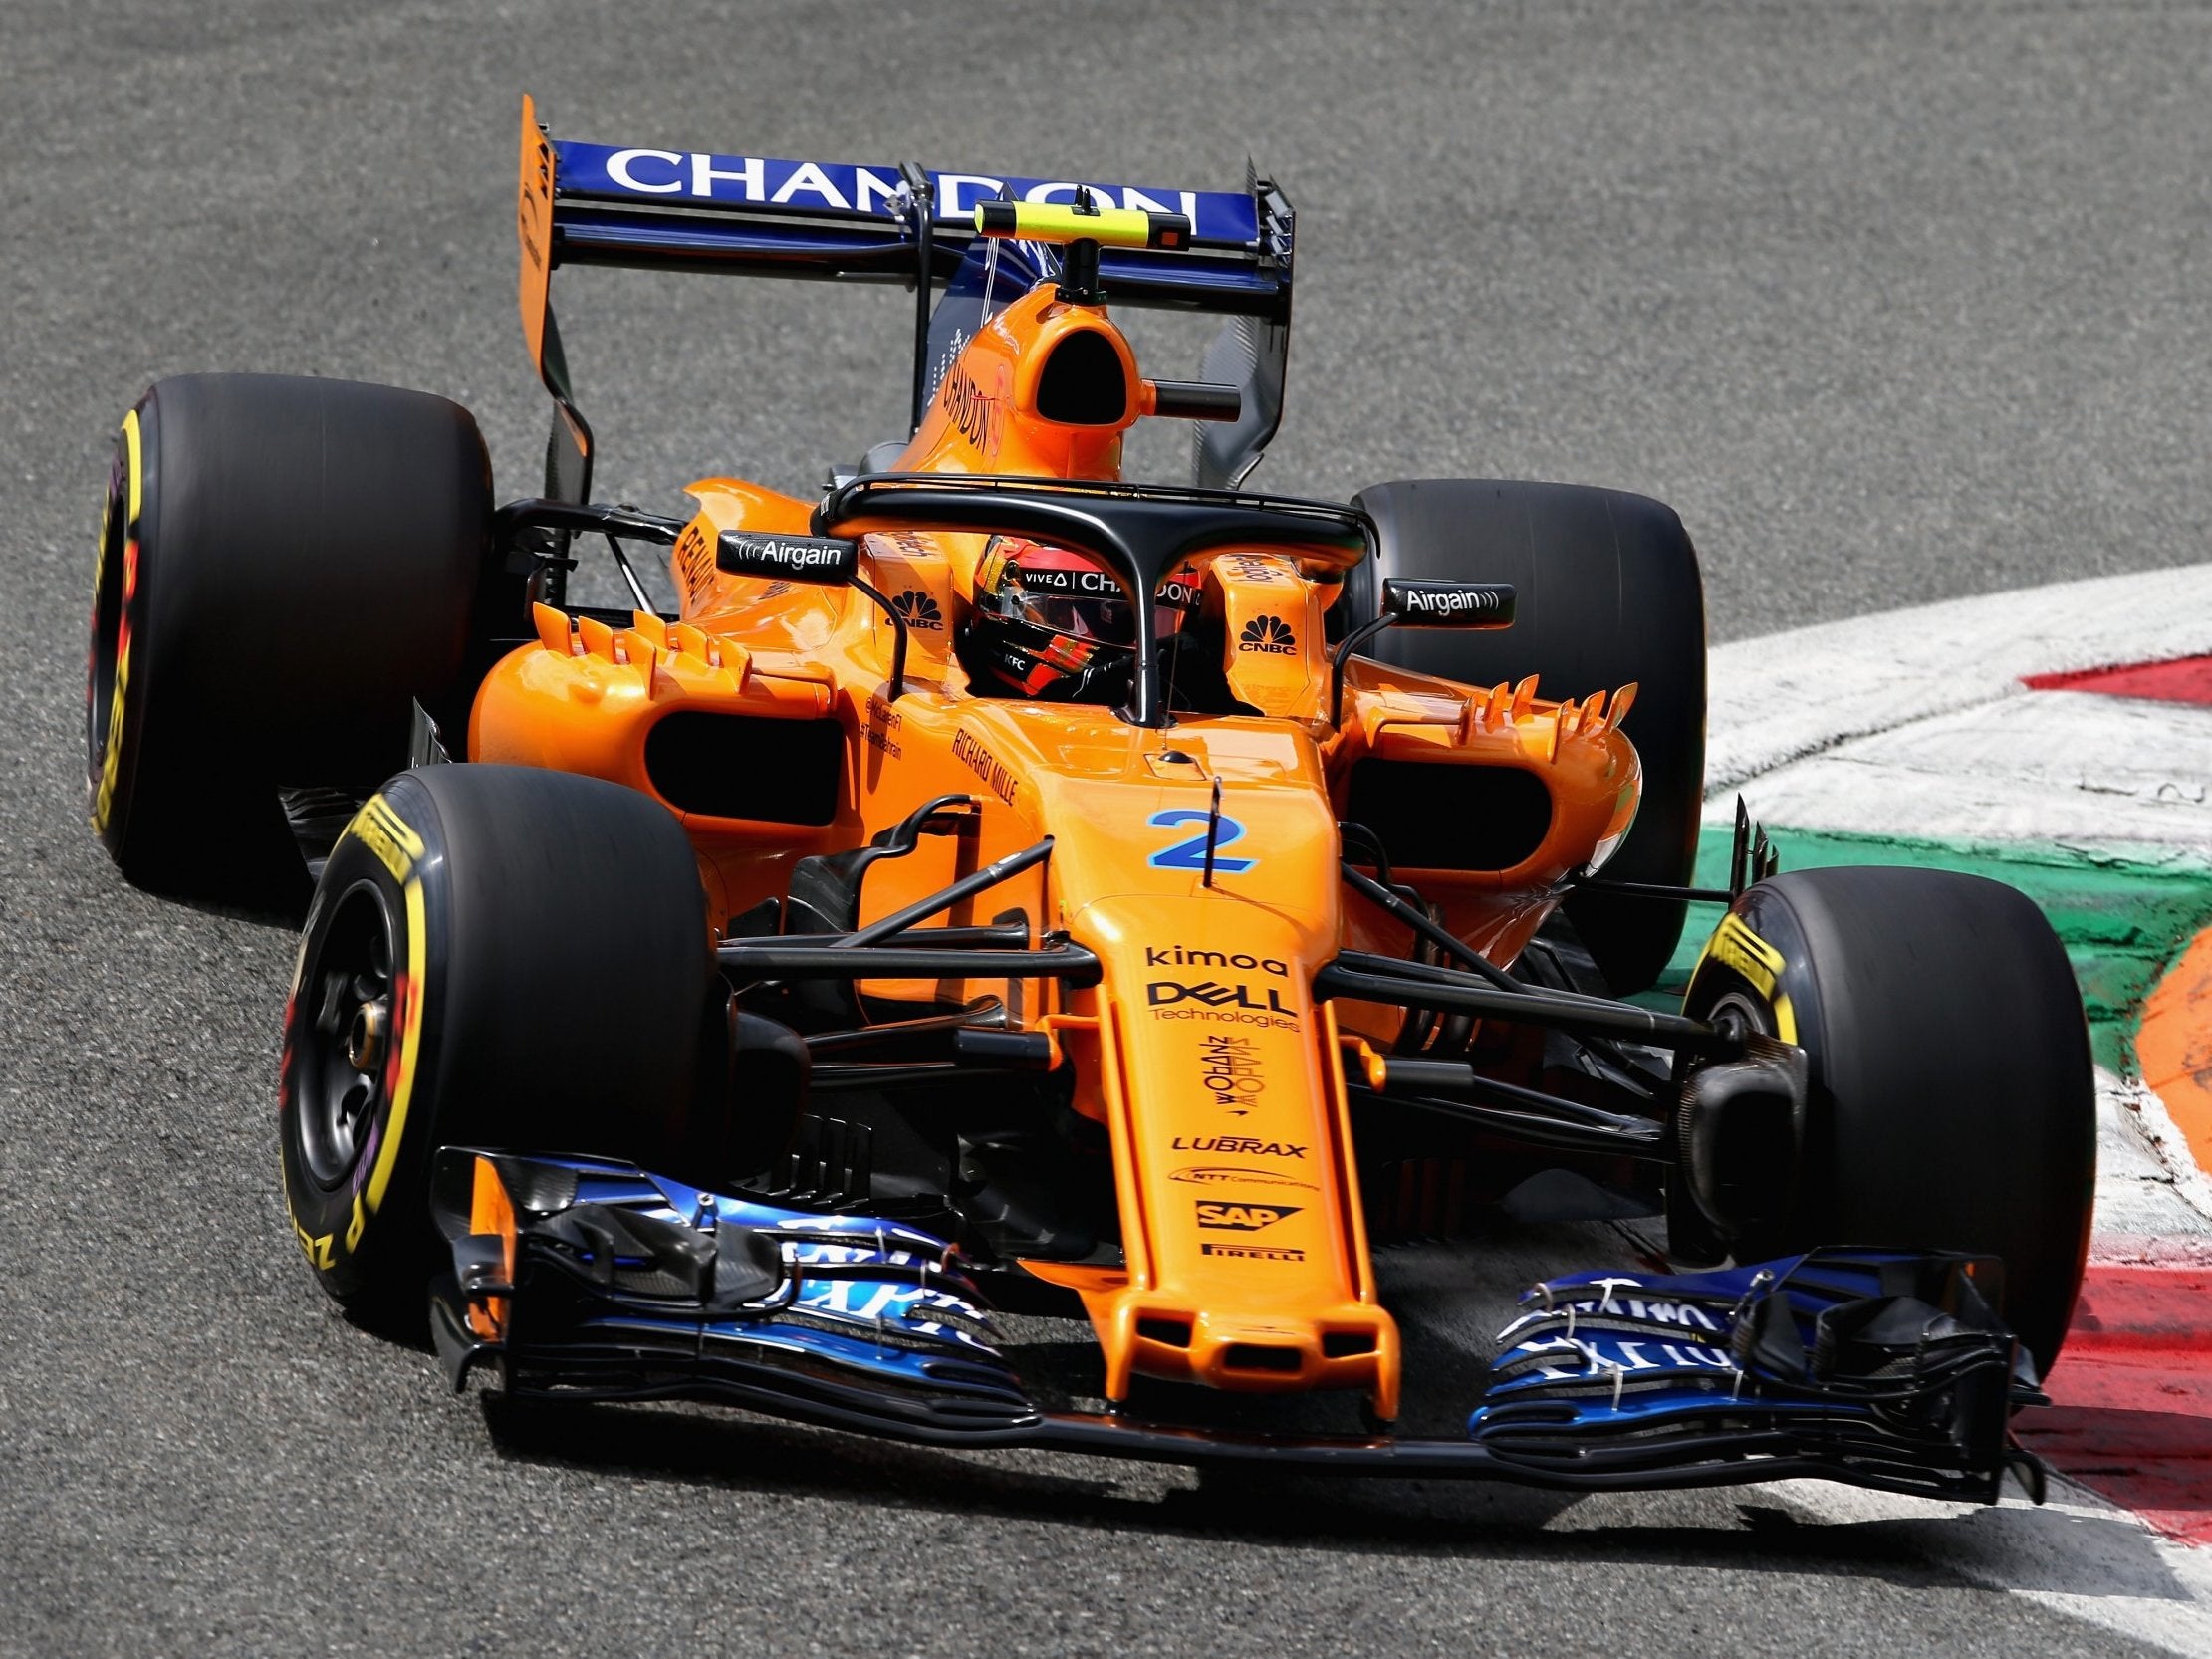 McLaren CEO Zak Brown regretted bot giving Vandoorne 'the tools to show his true talent'